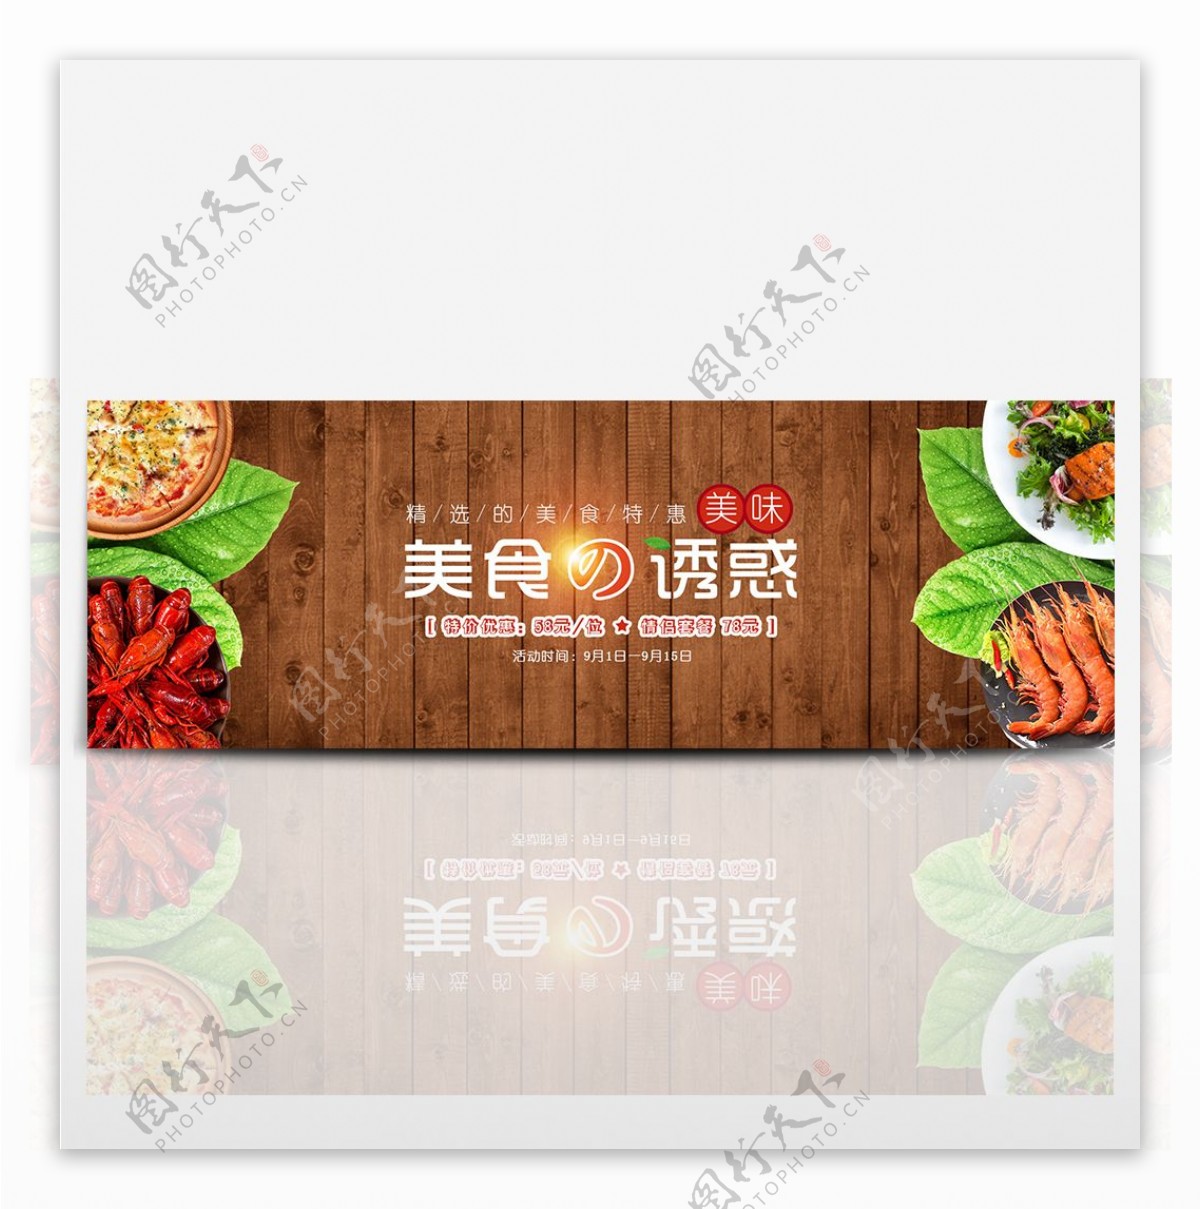 美味熟食木板背景淘宝banner电商海报